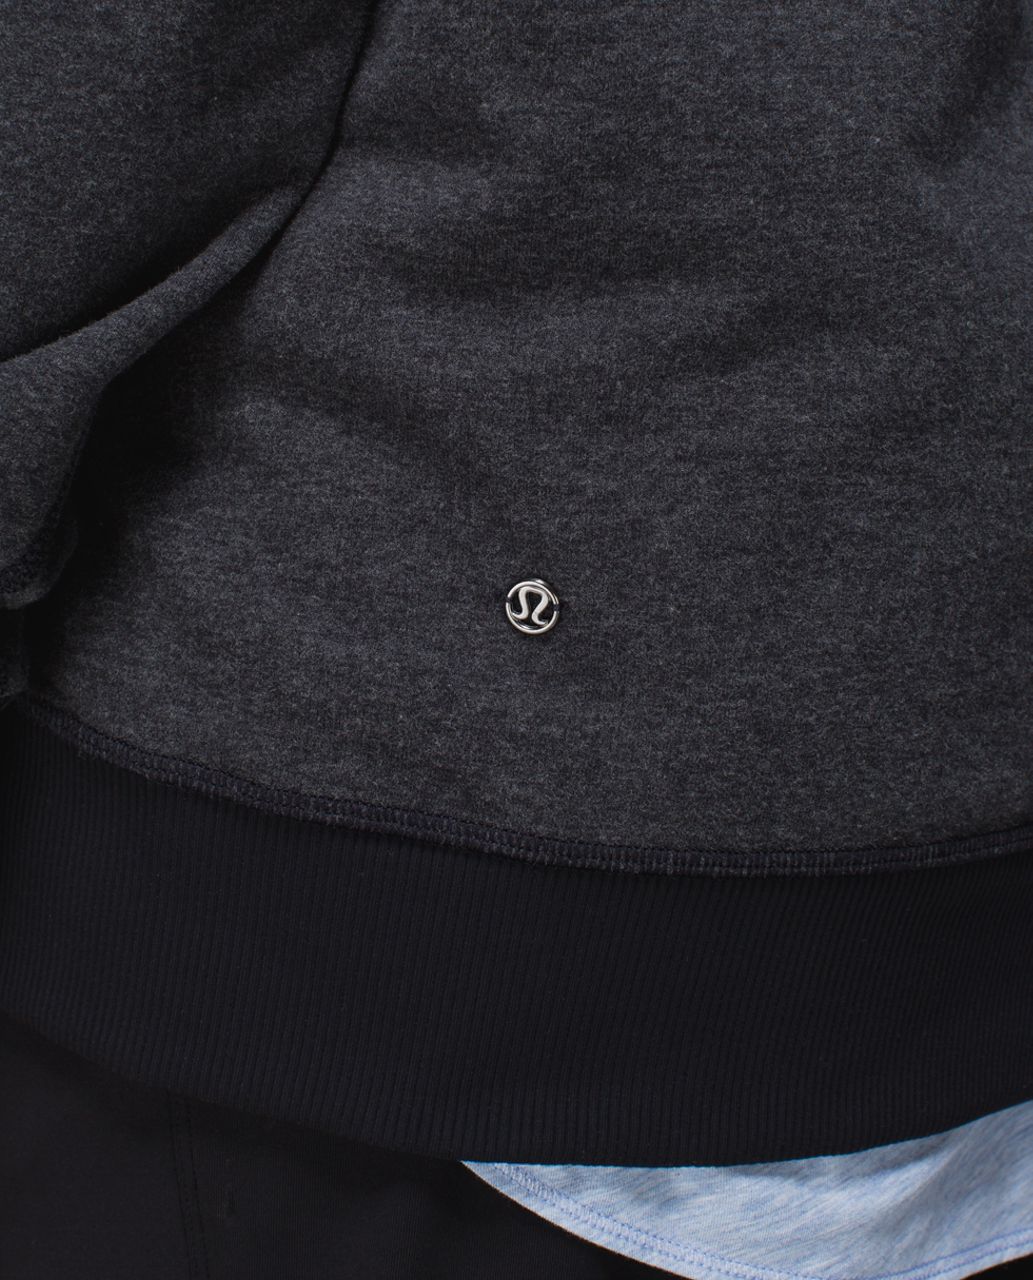 Lululemon Om & Roam Pullover Hoodie Sweatshirt Side Zippers Women's Size 2  Gray